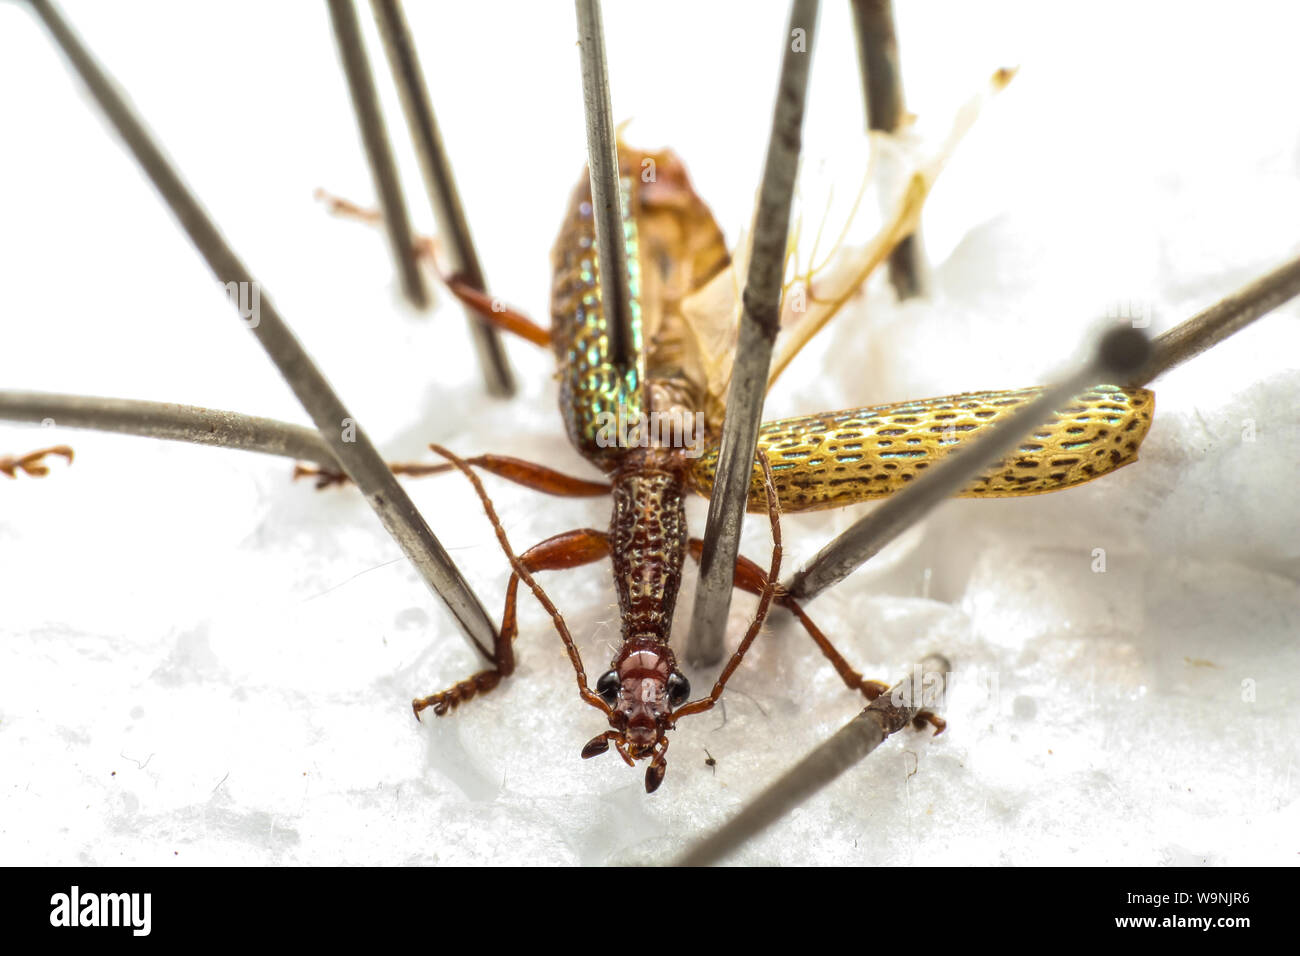 Insectes épinglés, macro d'un laboratoire d'entomologie coléoptères préservés pour la taxonomie (Coleoptera, Carabidae) Banque D'Images